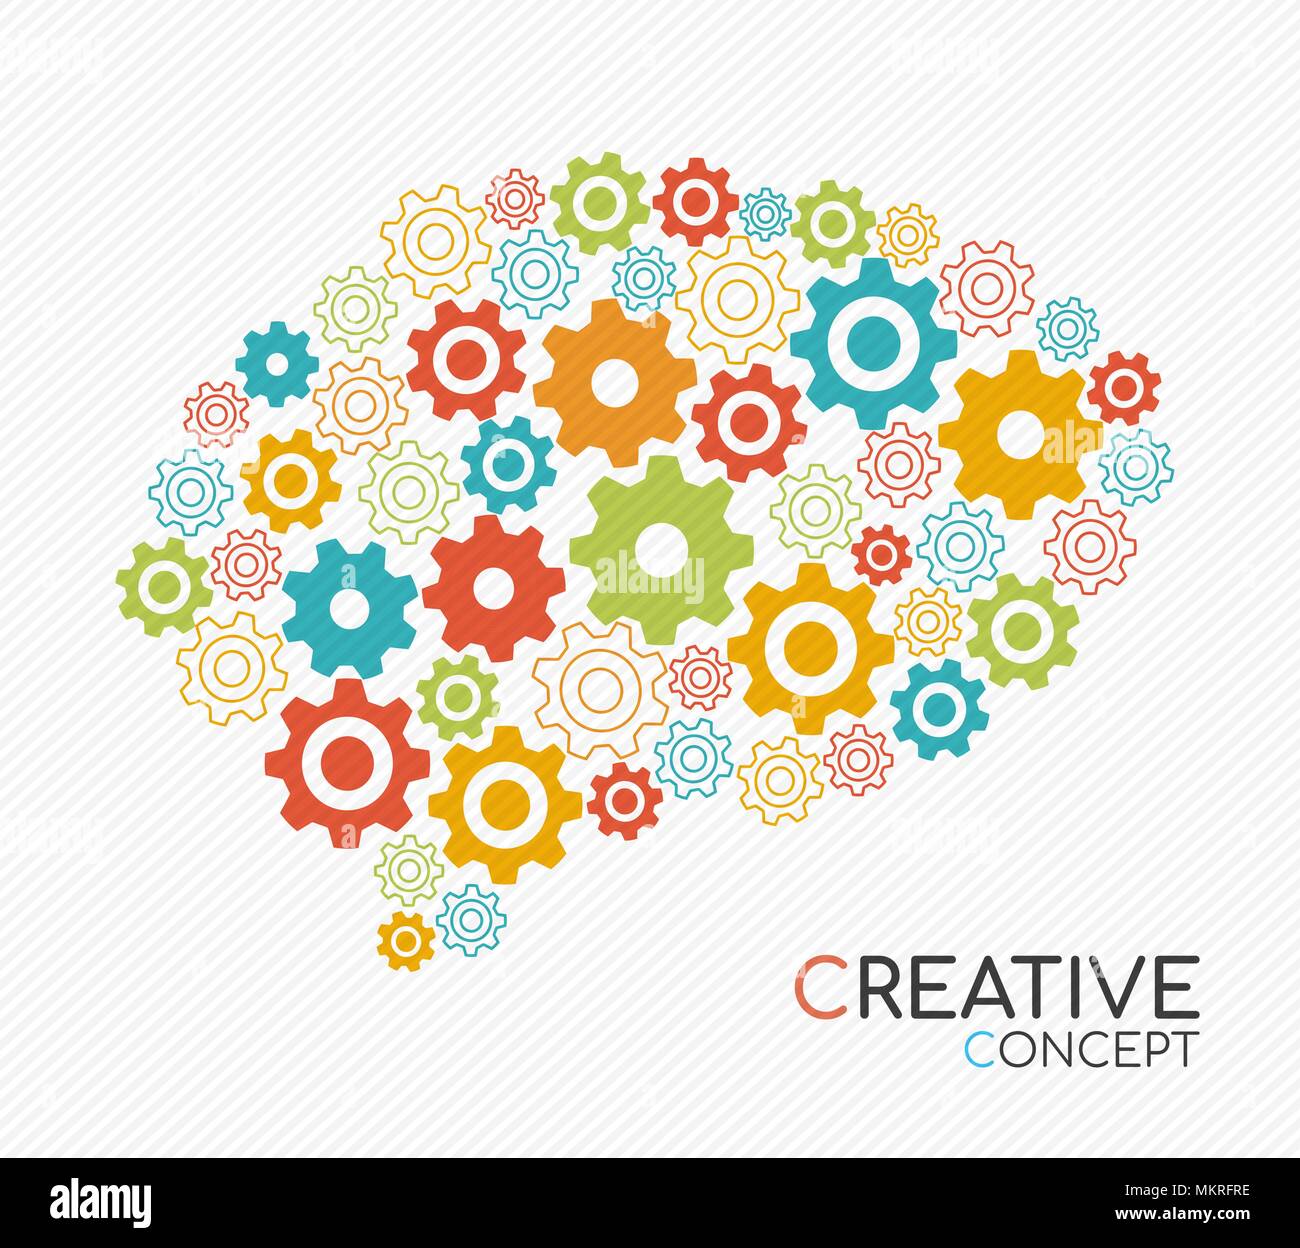 La pensée créative concept illustration du cerveau humain avec des pignons dans la style du contour moderne pour processus de créativité. Vecteur EPS10. Illustration de Vecteur